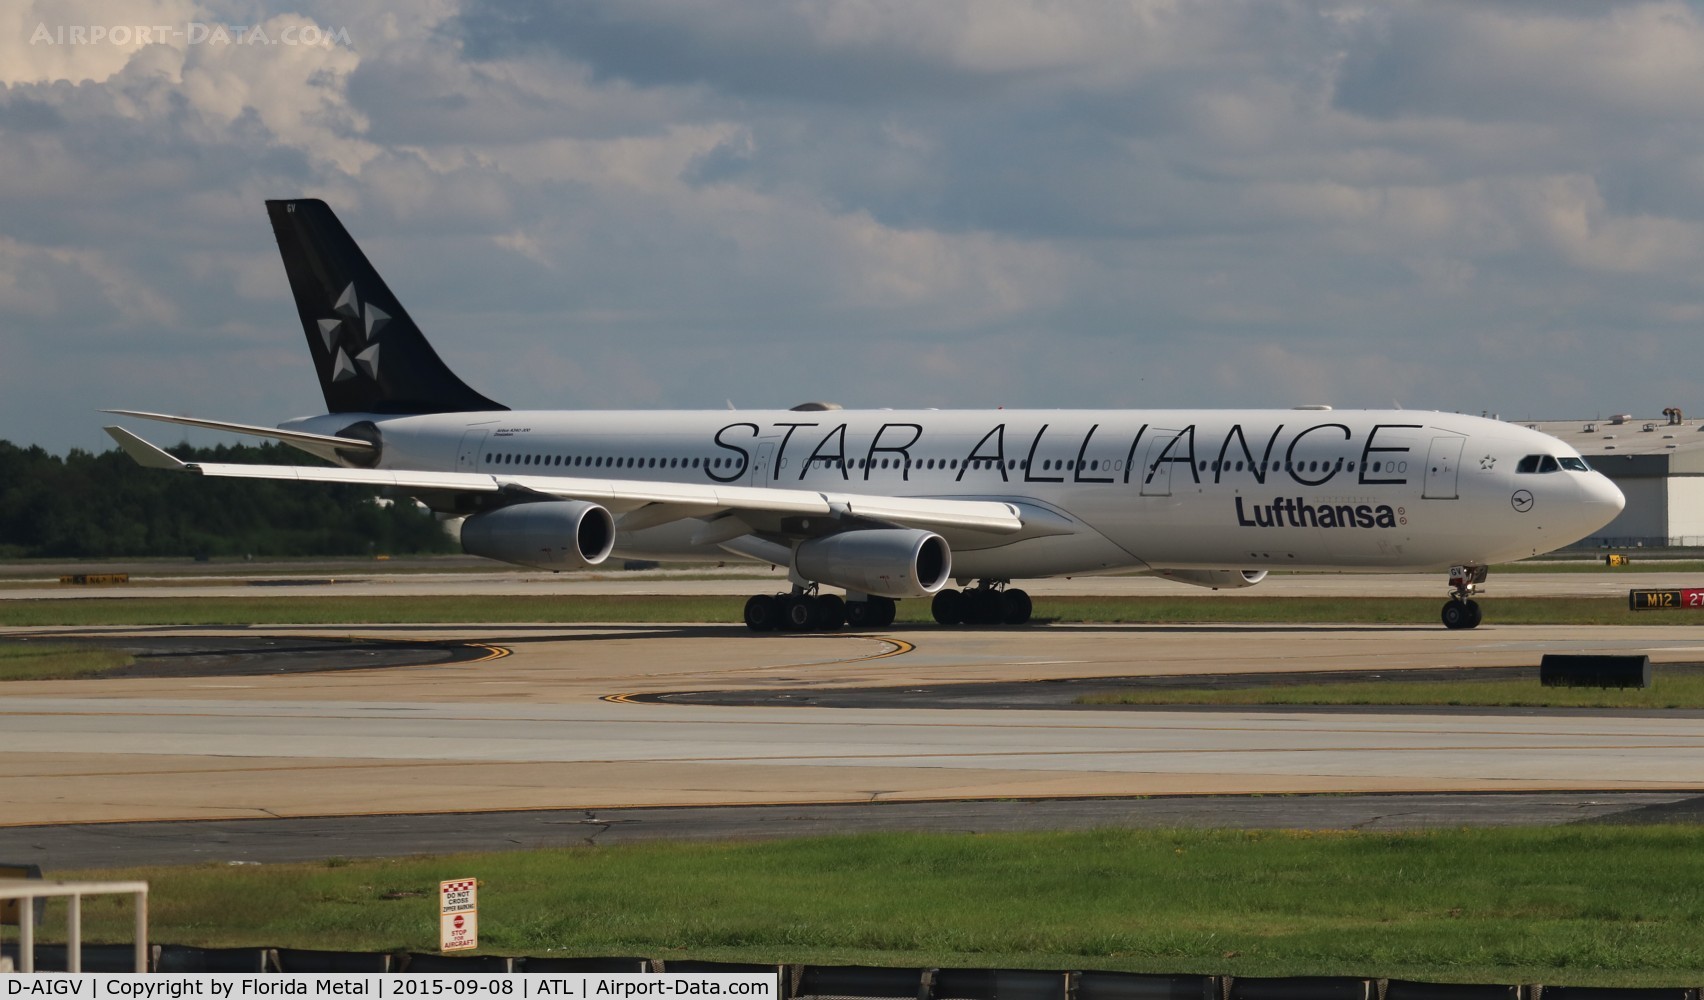 D-AIGV, 2000 Airbus A340-313X C/N 325, Lufthansa Star Alliance